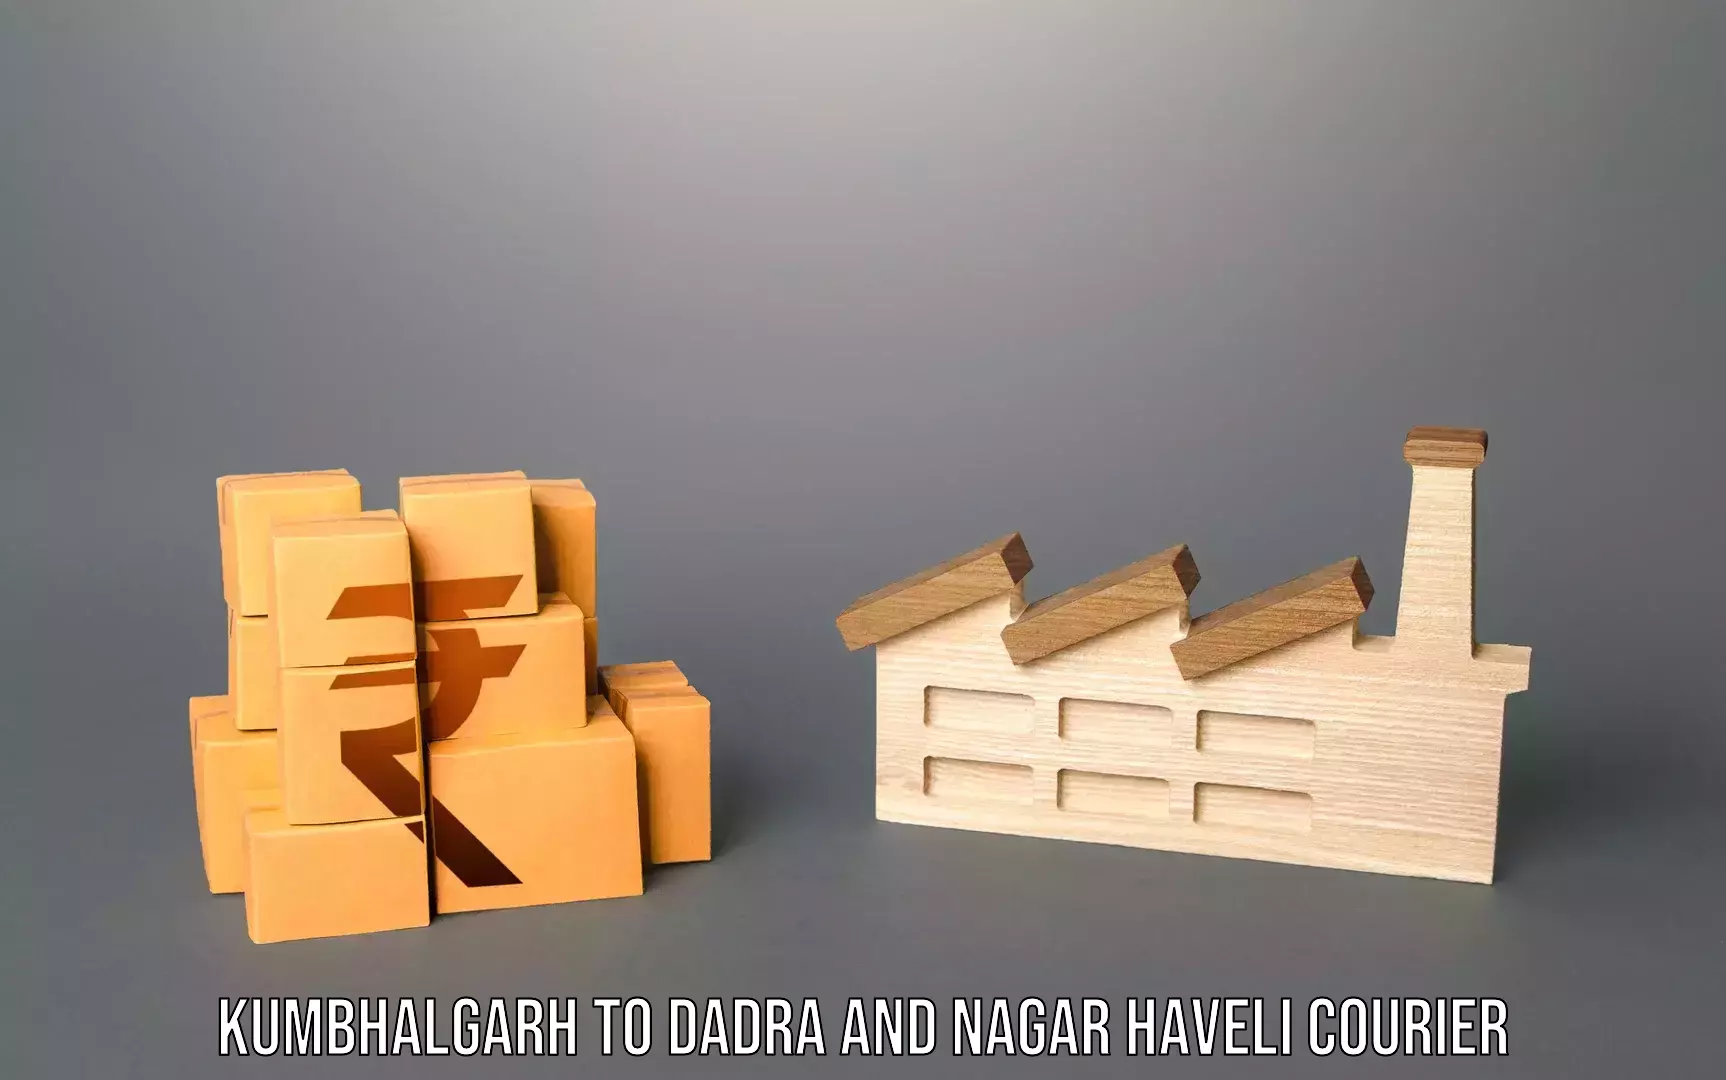 Door-to-door baggage service Kumbhalgarh to Dadra and Nagar Haveli